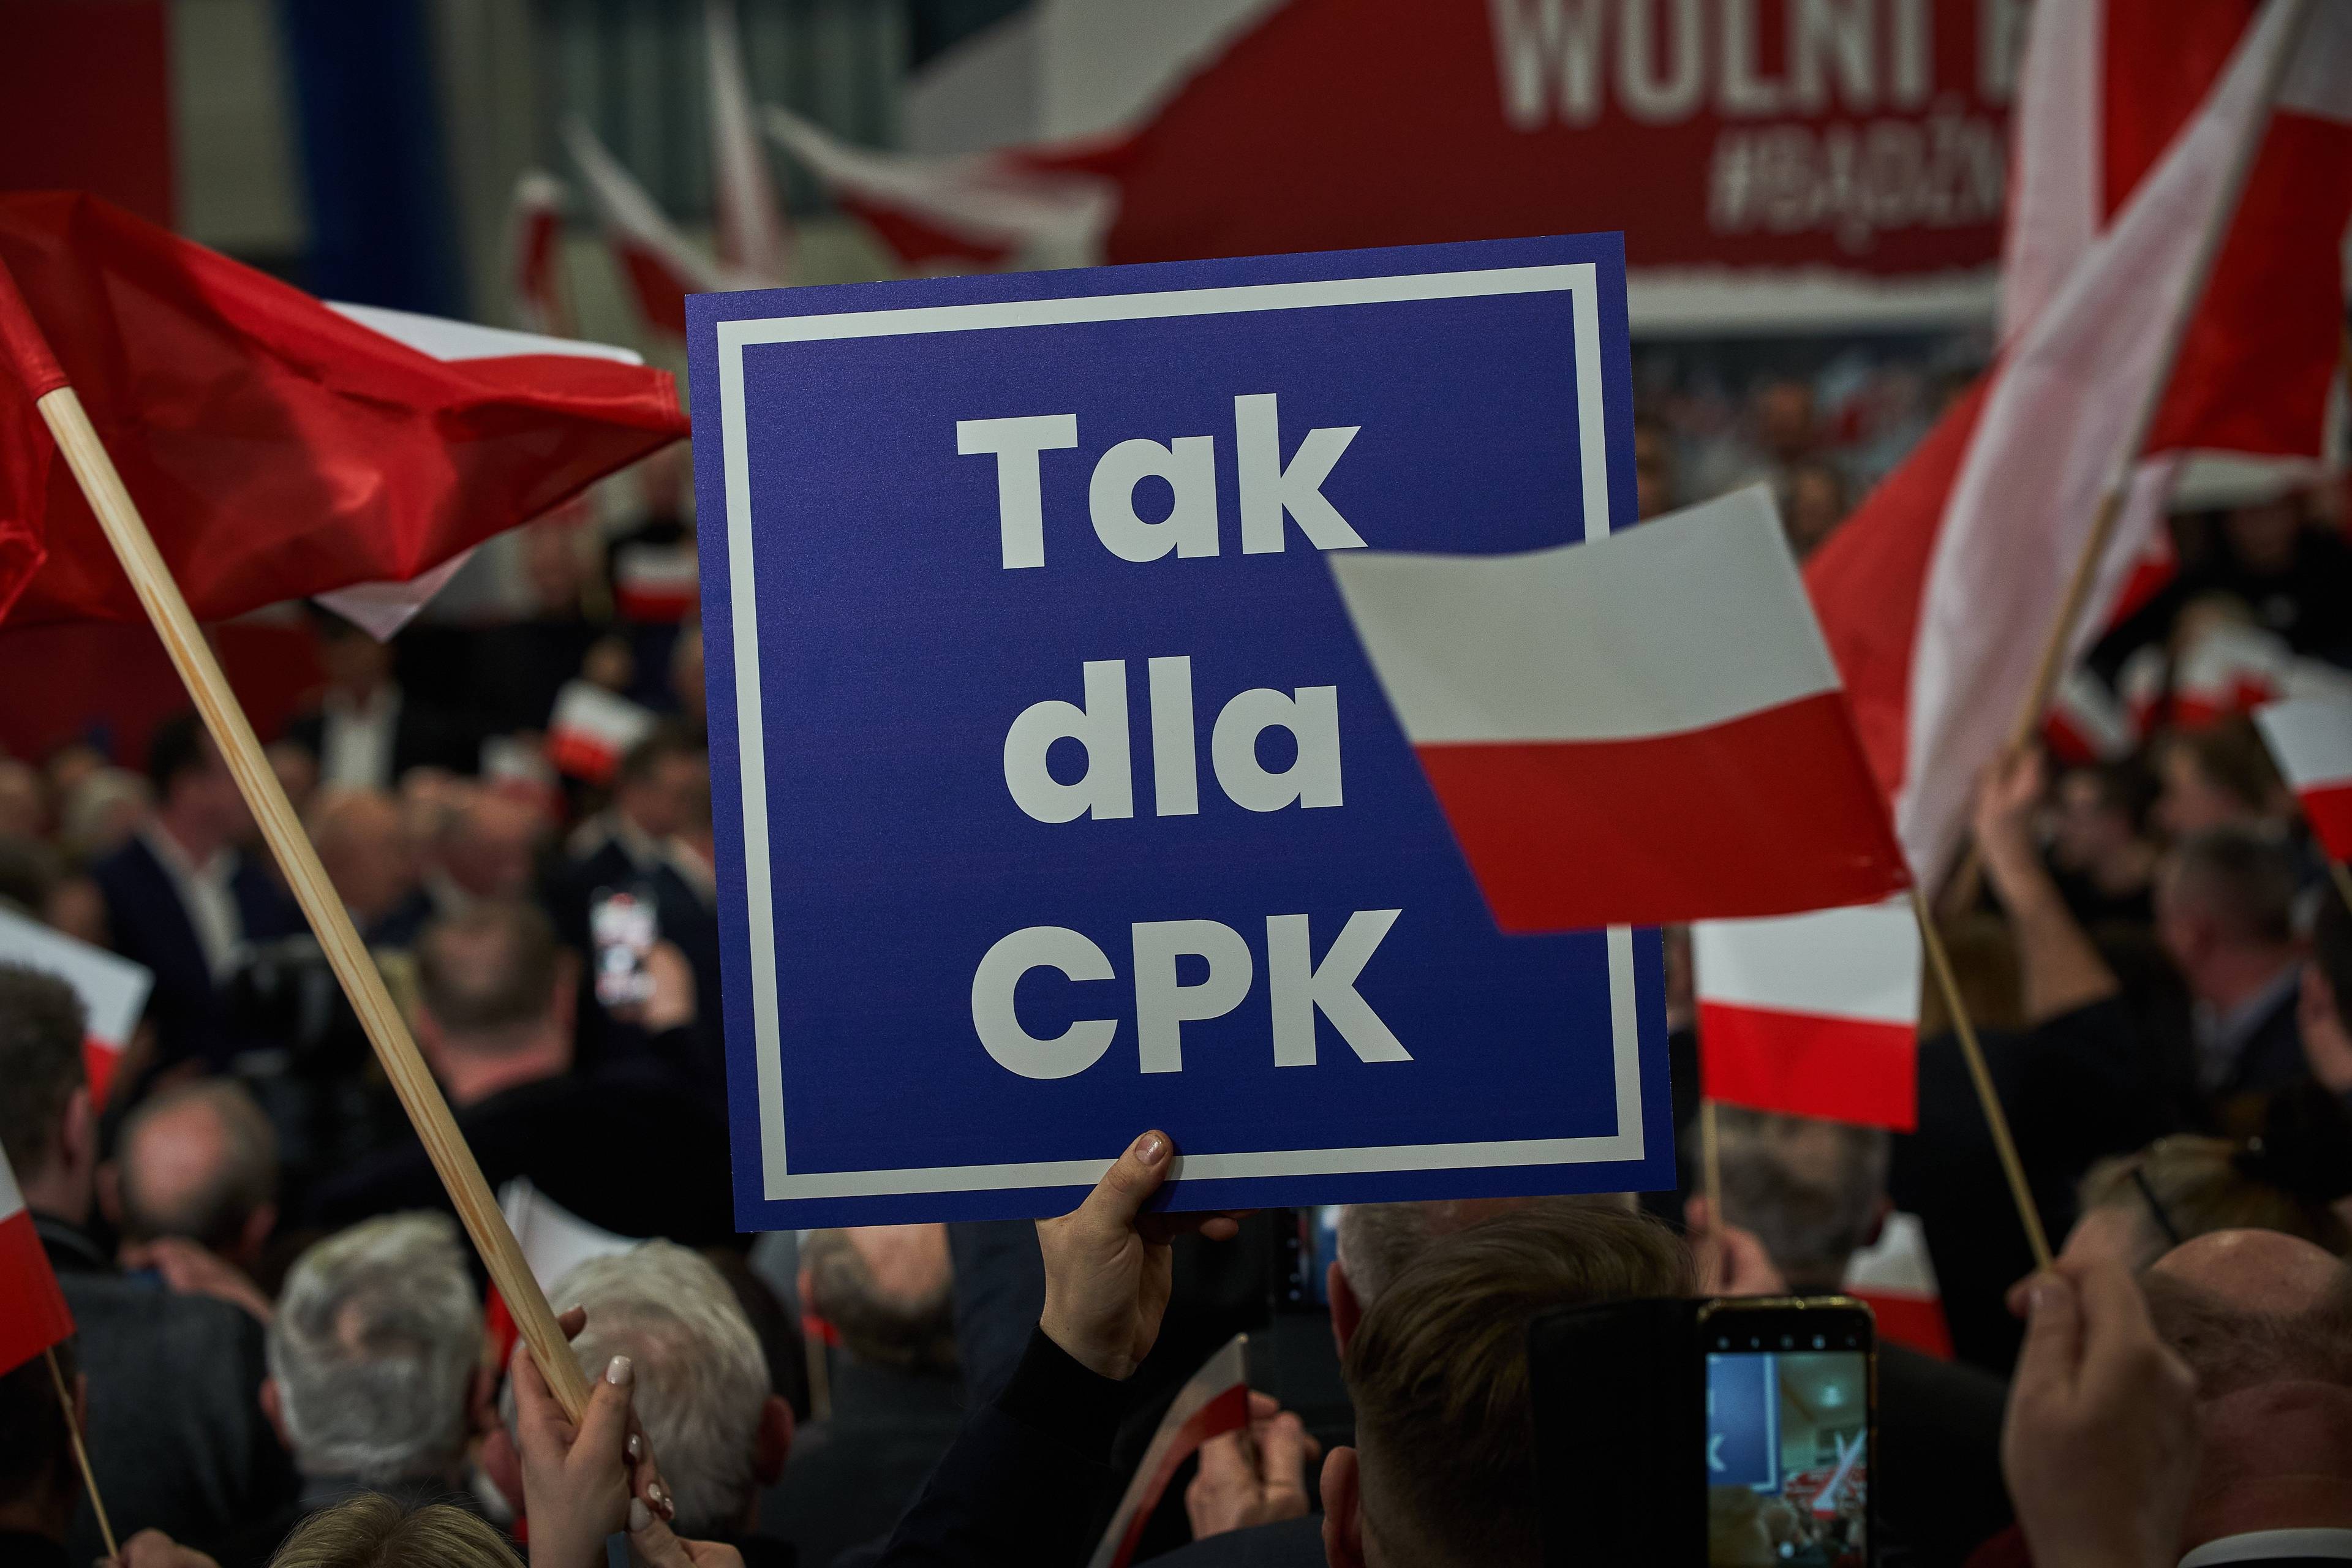 Kwadratowy niebieski banner z napisem "Tak dla CPK"